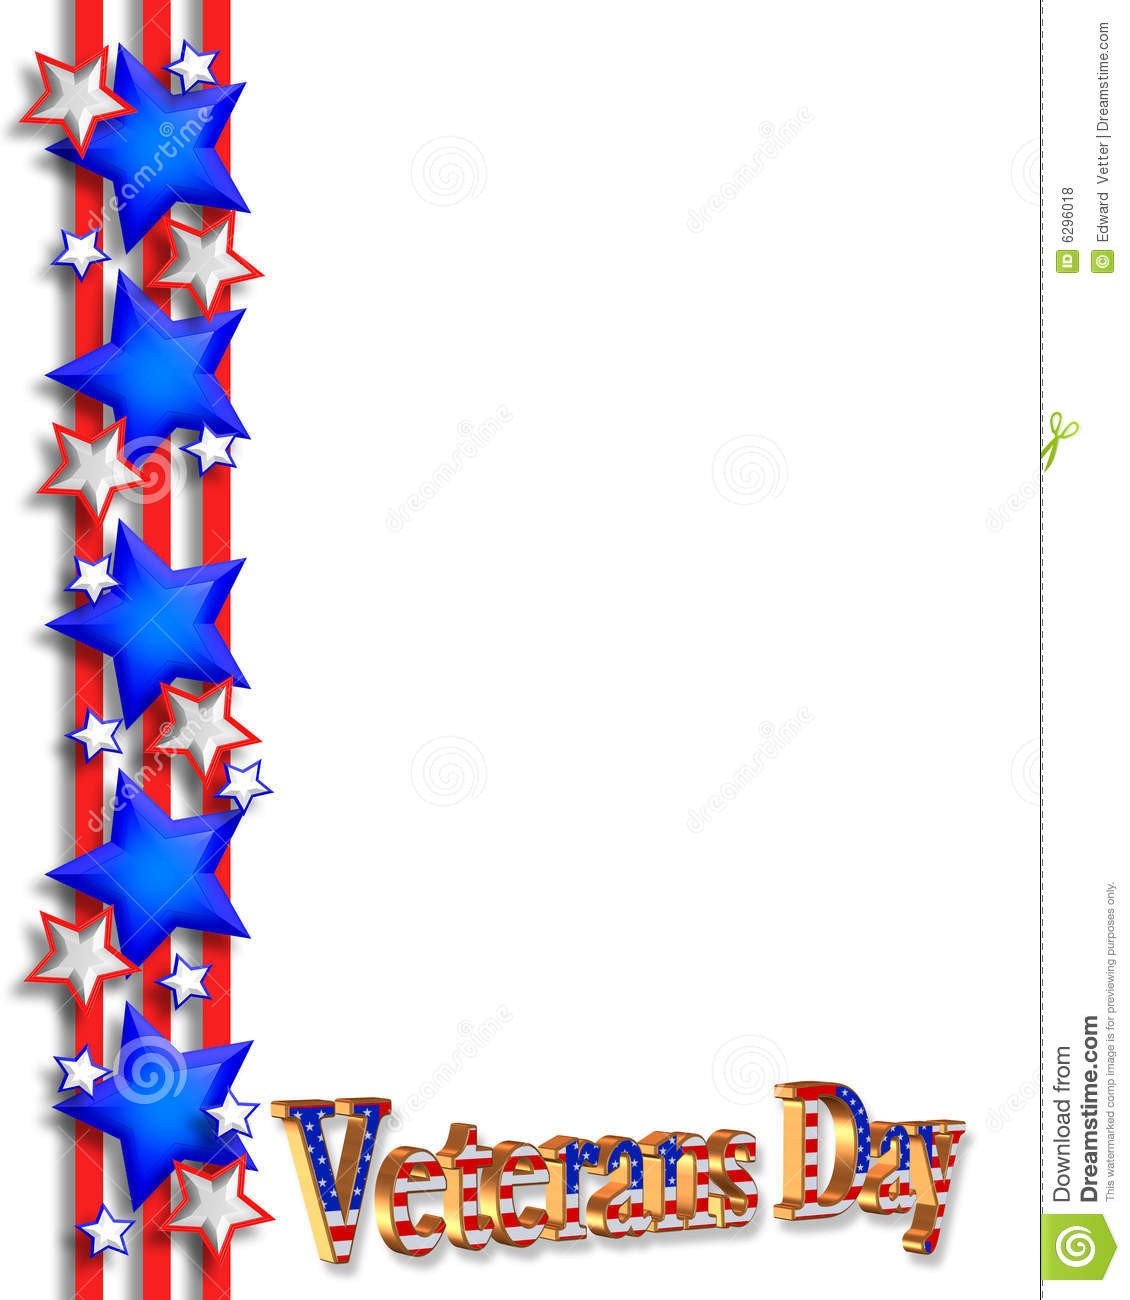 Veterans Day Background 3D stock illustration